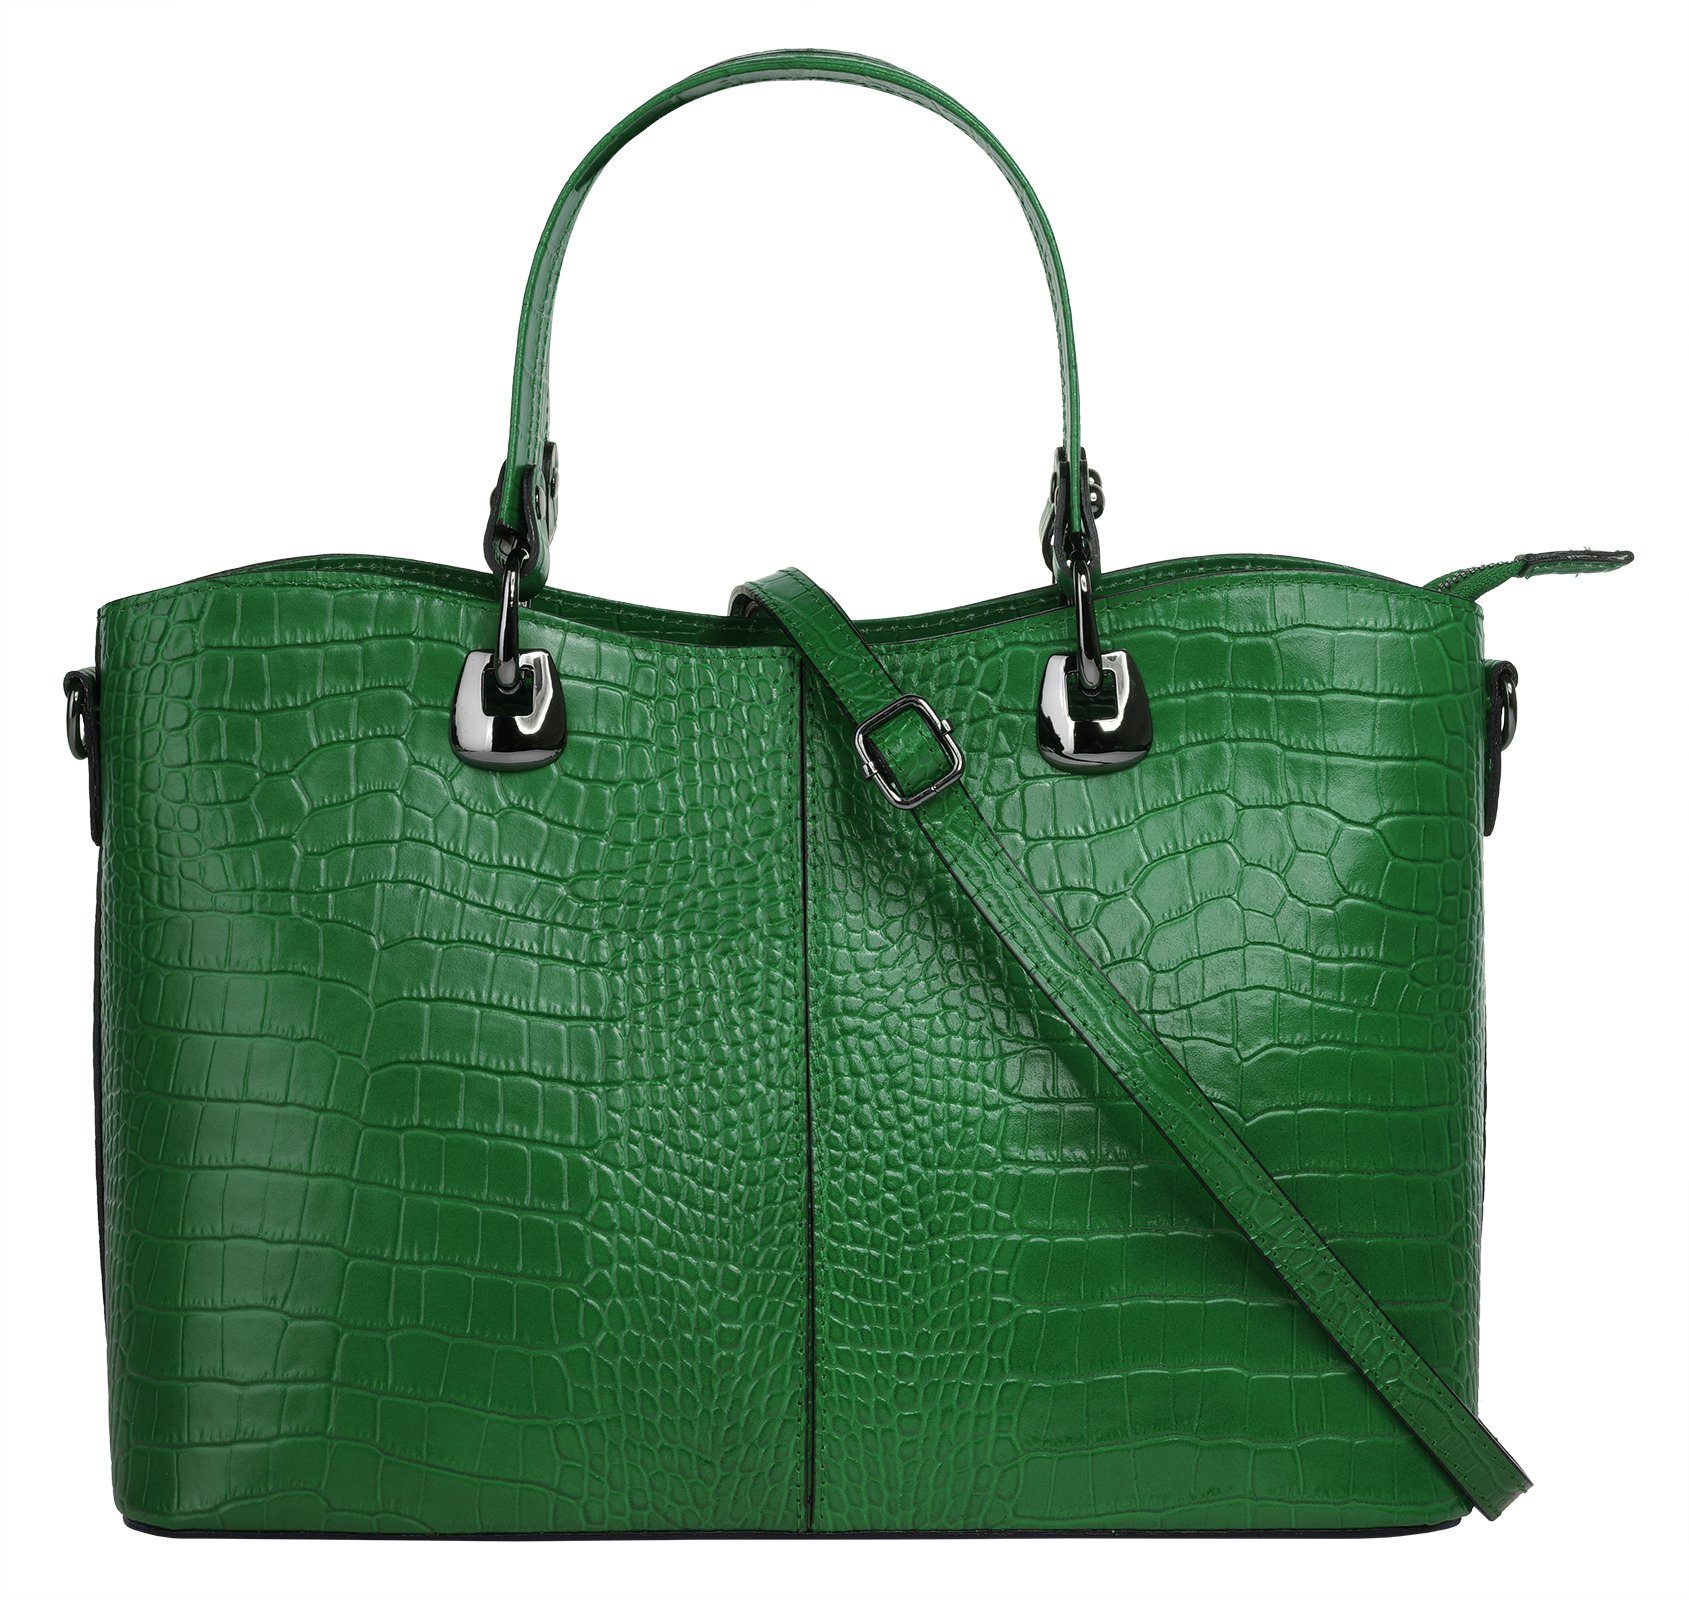 Handtasche in grün online kaufen | OTTO